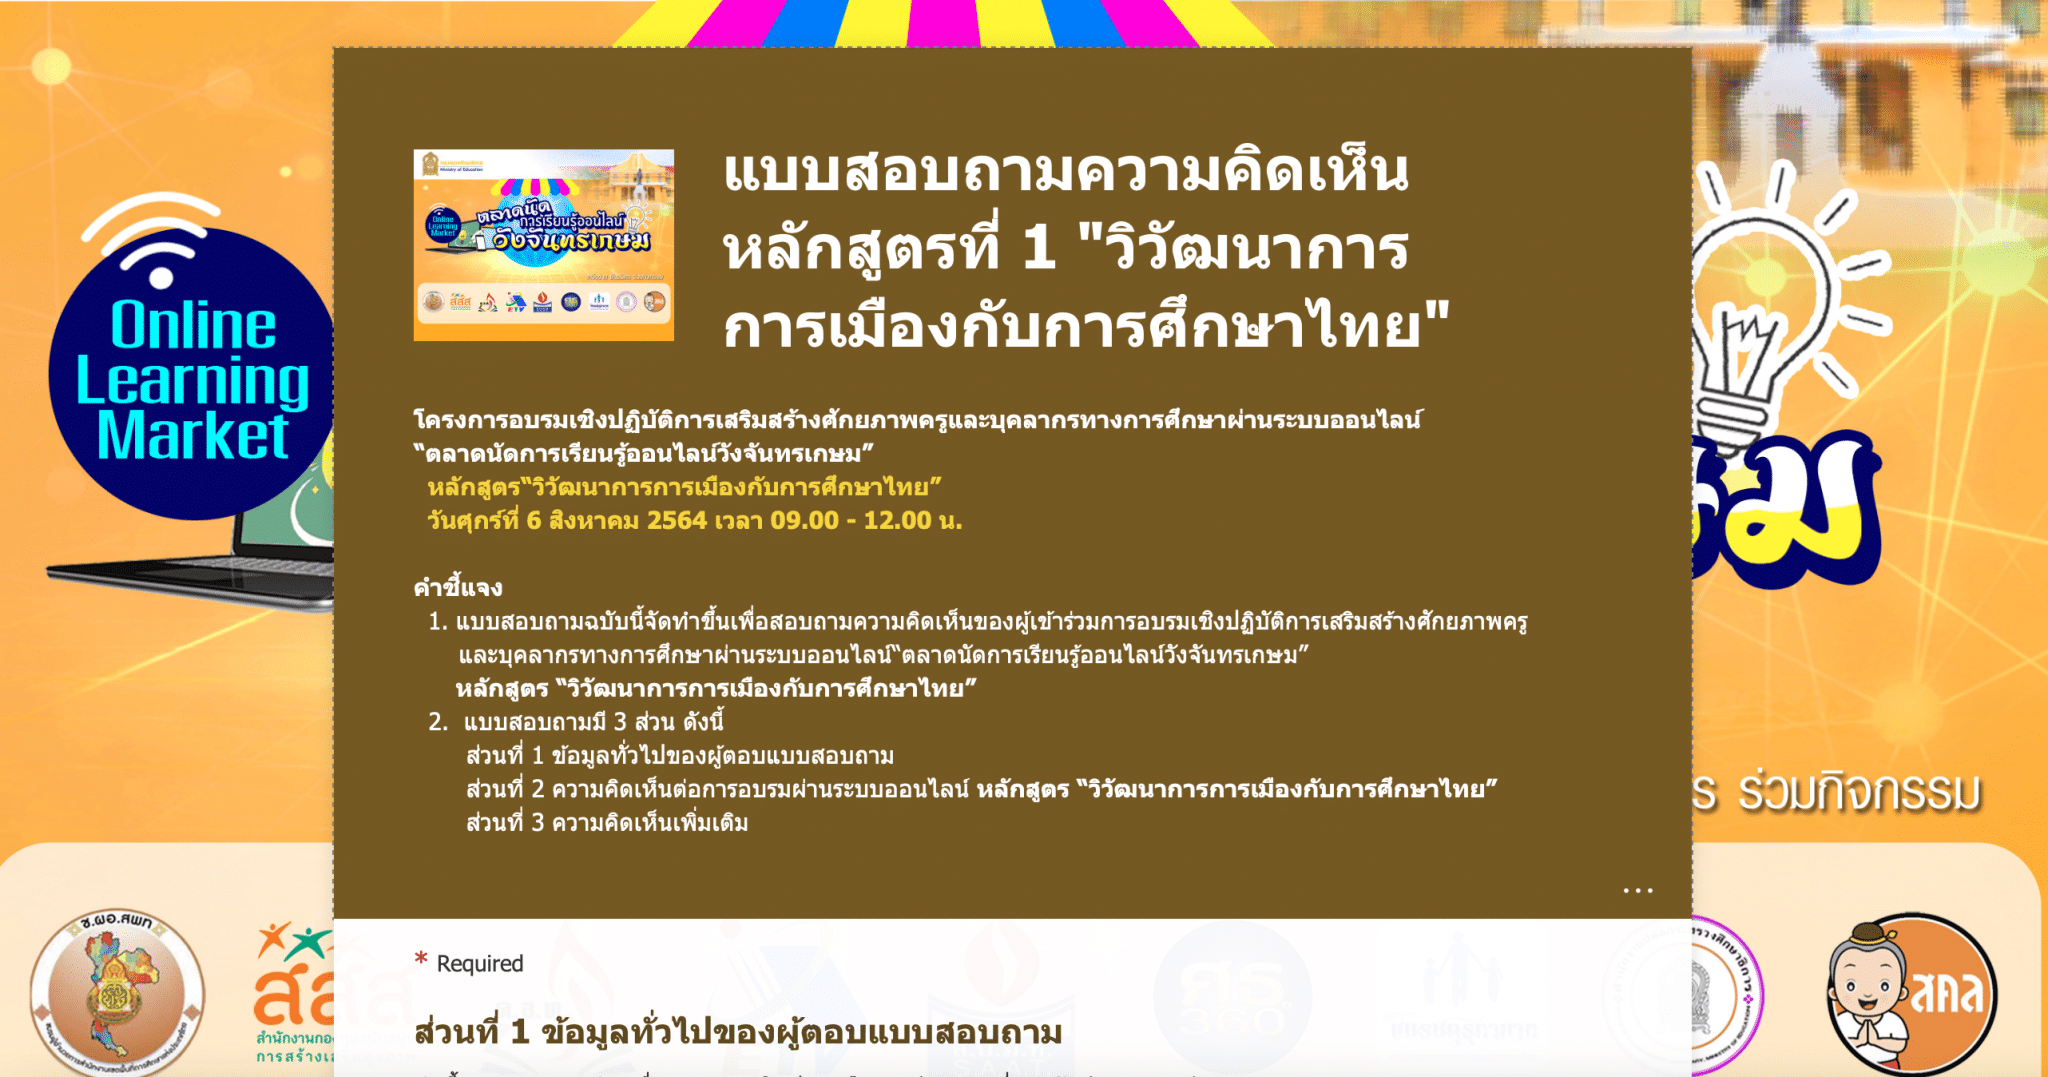 ลิงก์แบบสอบถาม ความคิดเห็นหลักสูตรที่1 วิวัฒนาการการเมืองกับการศึกษาไทย โดยนายชวน หลีกภัย ประธานรัฐสภา” ตลาดนัดการเรียนรู้ออนไลน์วังจันทรเกษม เปิดให้ตอบ ถึง 16.00 น 6 สิงหาคม 2564